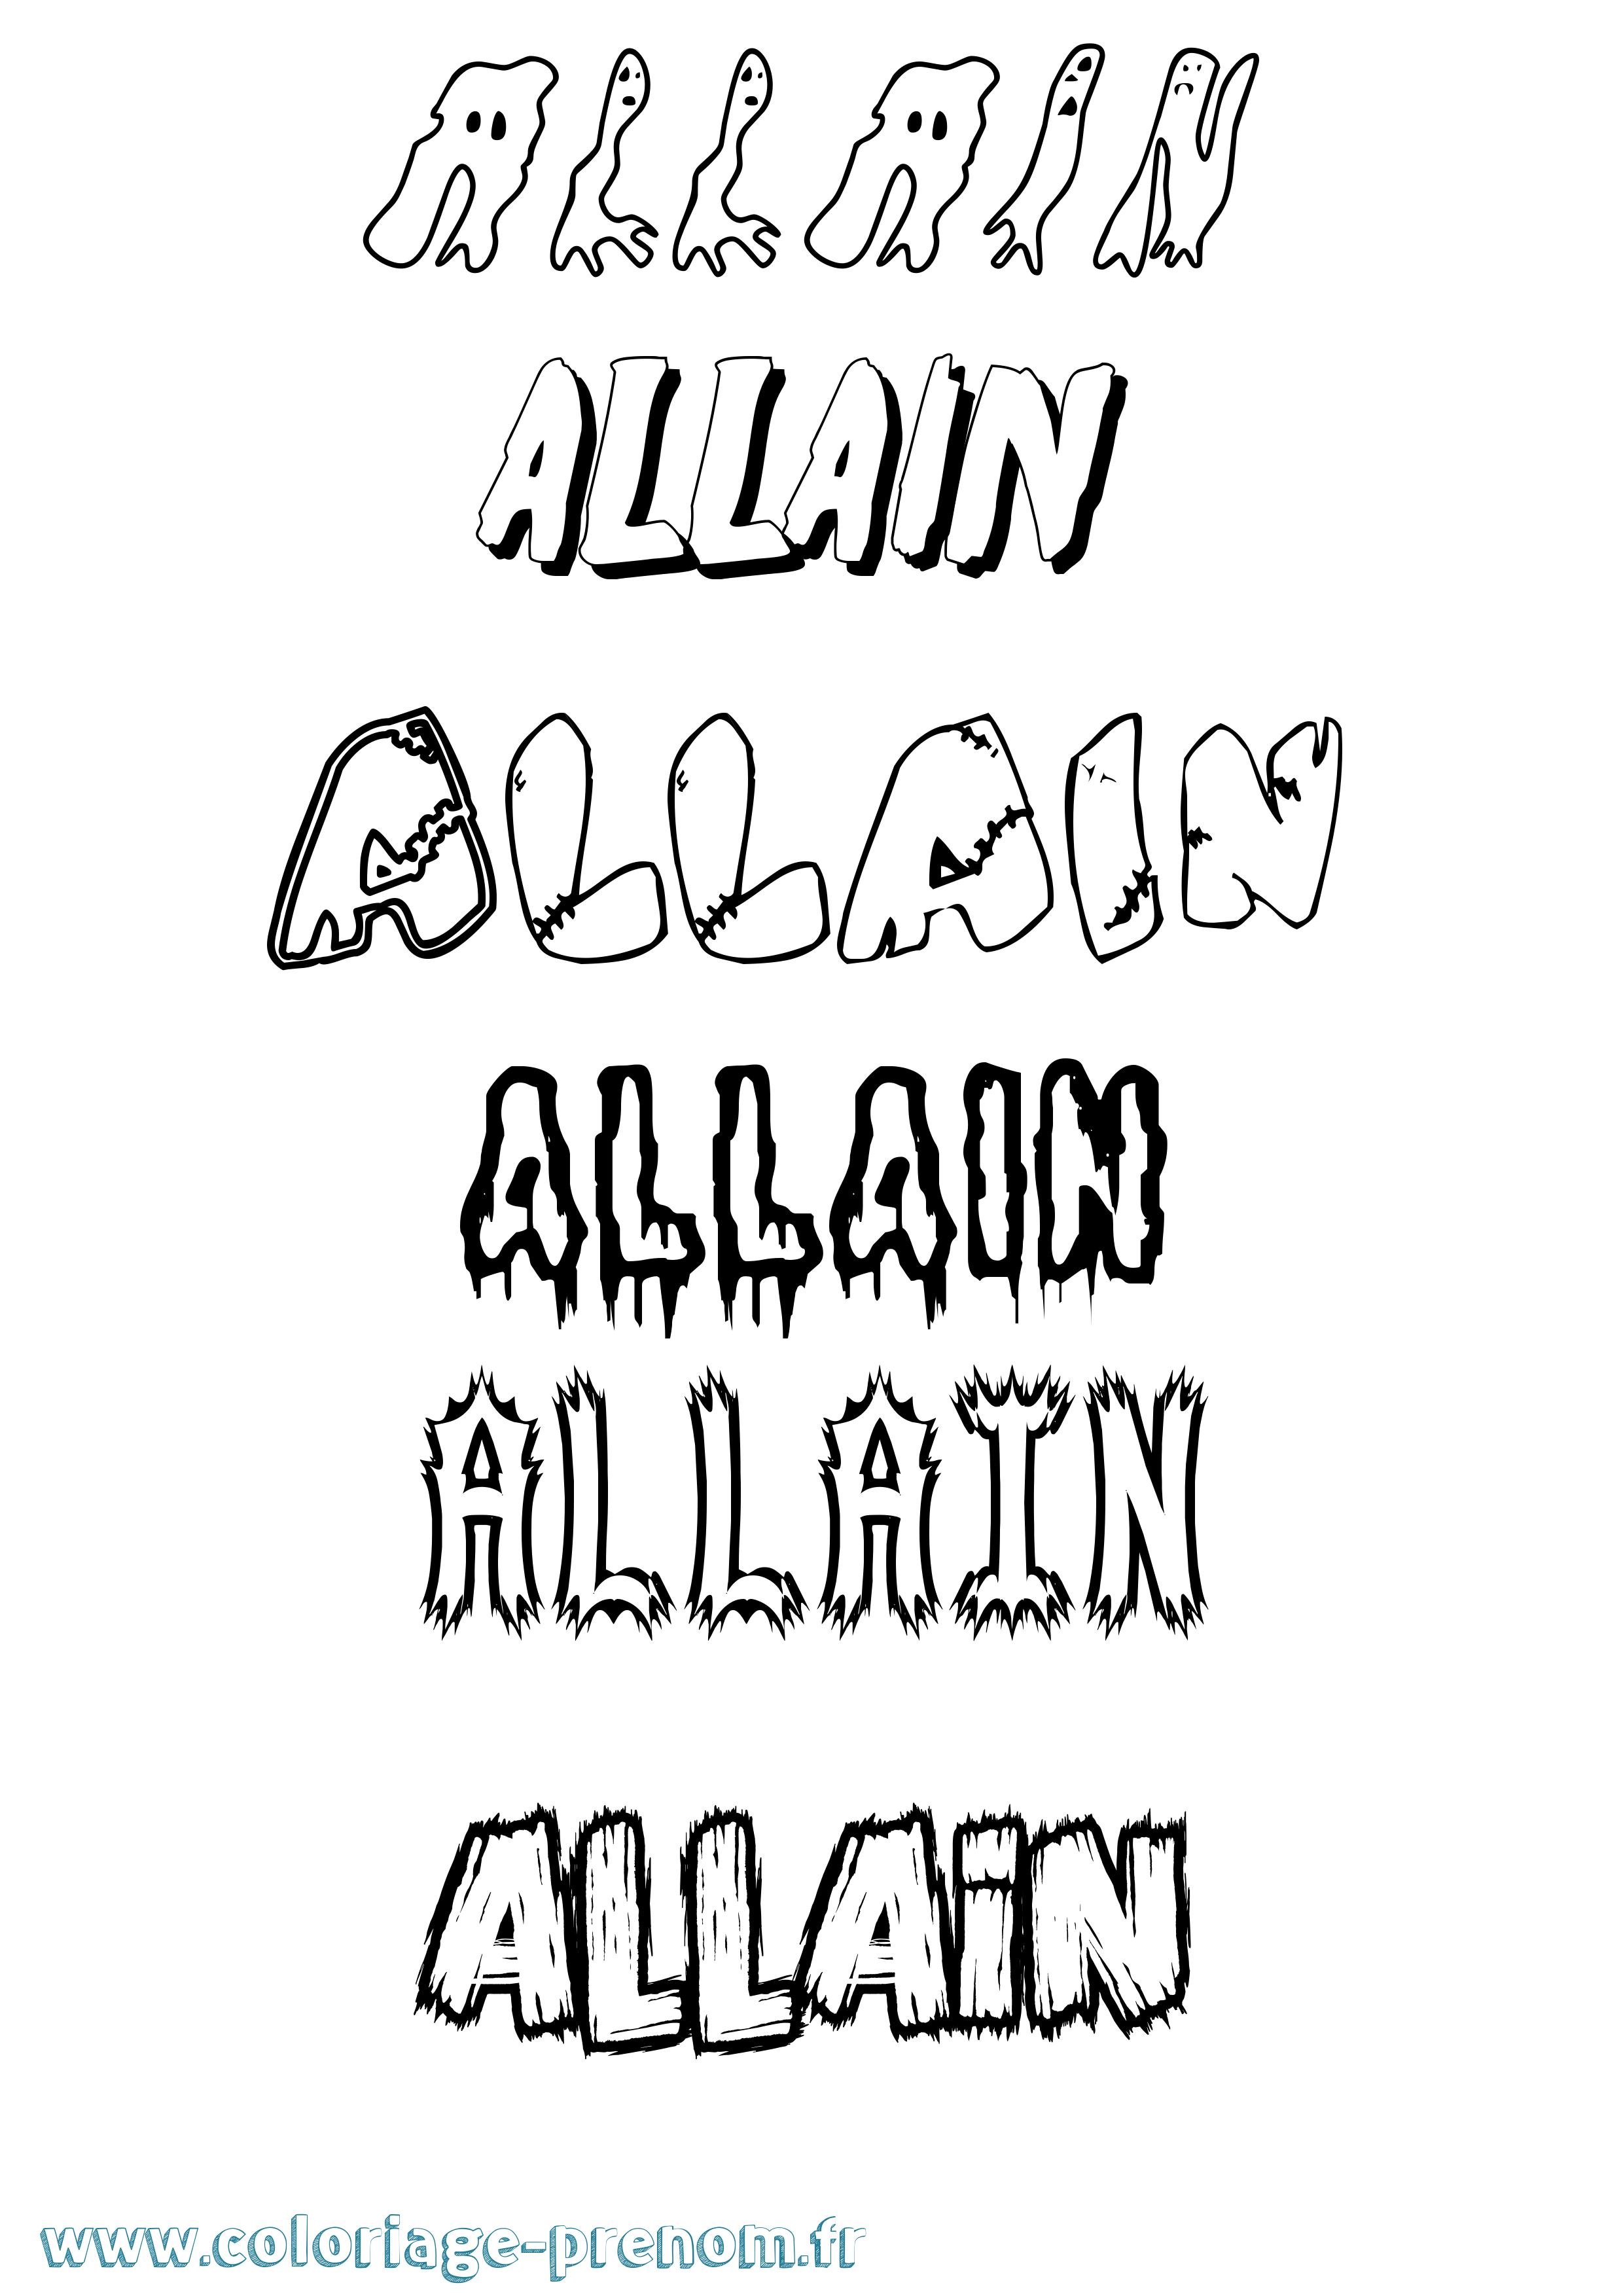 Coloriage prénom Allain Frisson